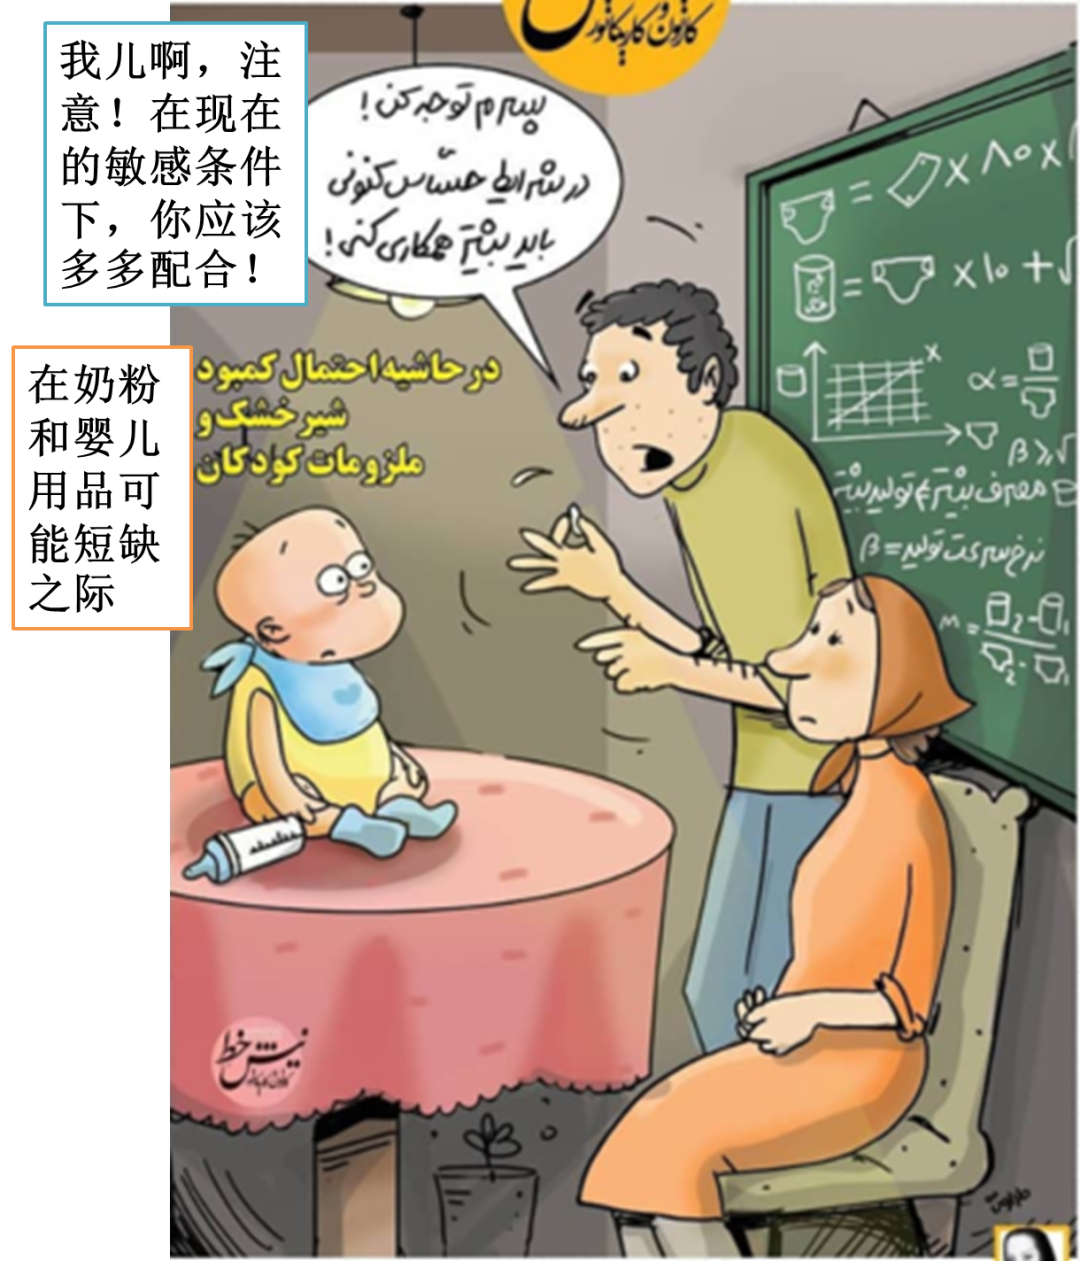 伊朗讽刺漫画丨画不惊人死不休 中东流浪站 微信公众号文章阅读 Wemp